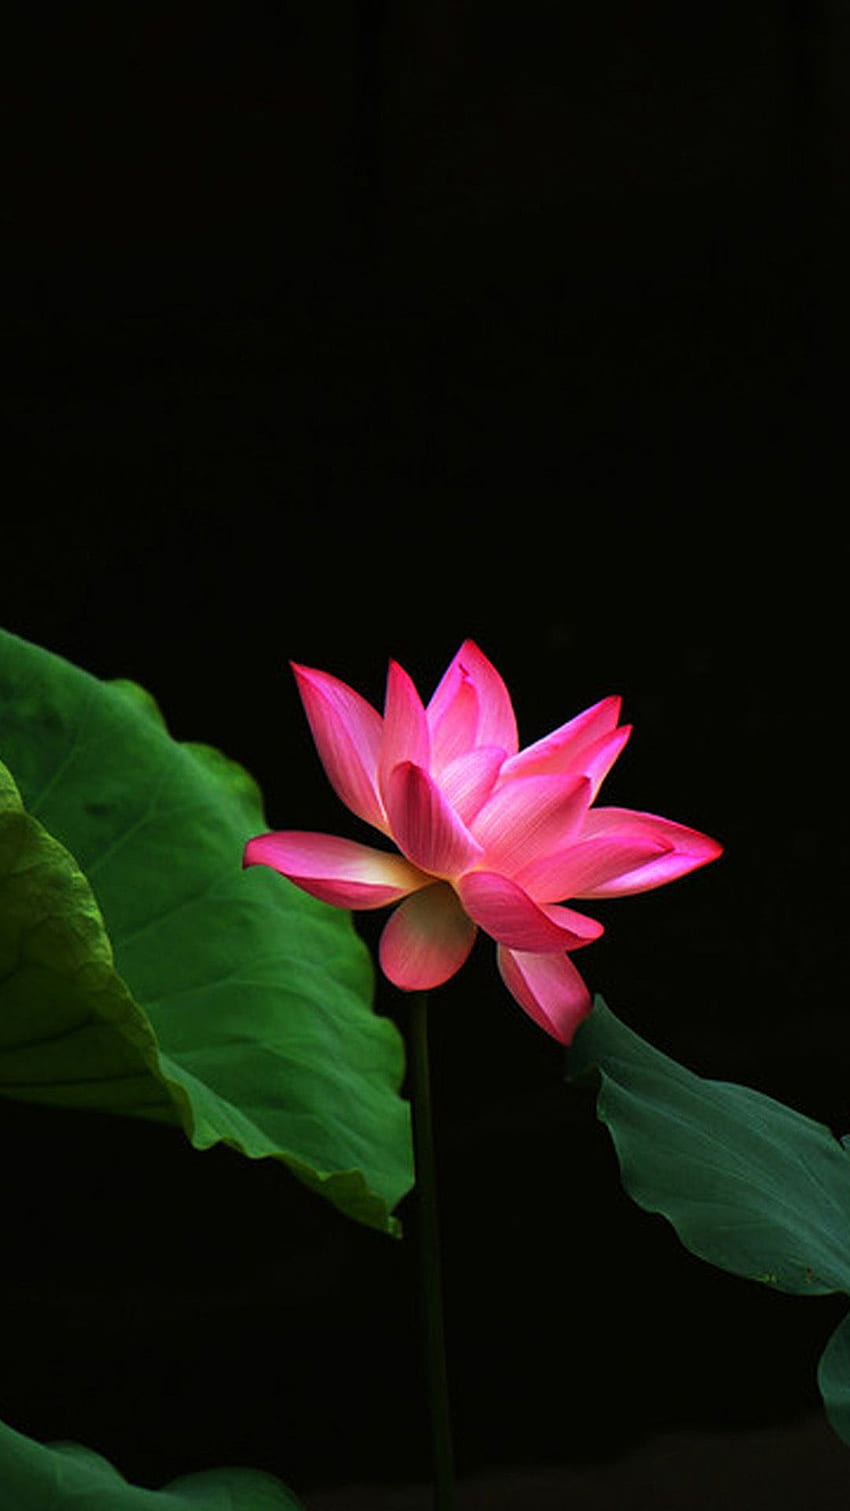 iPhone 5 czerwony kwiat lotosu w tle — portret kwiatu lotosu — — Tapeta na telefon HD